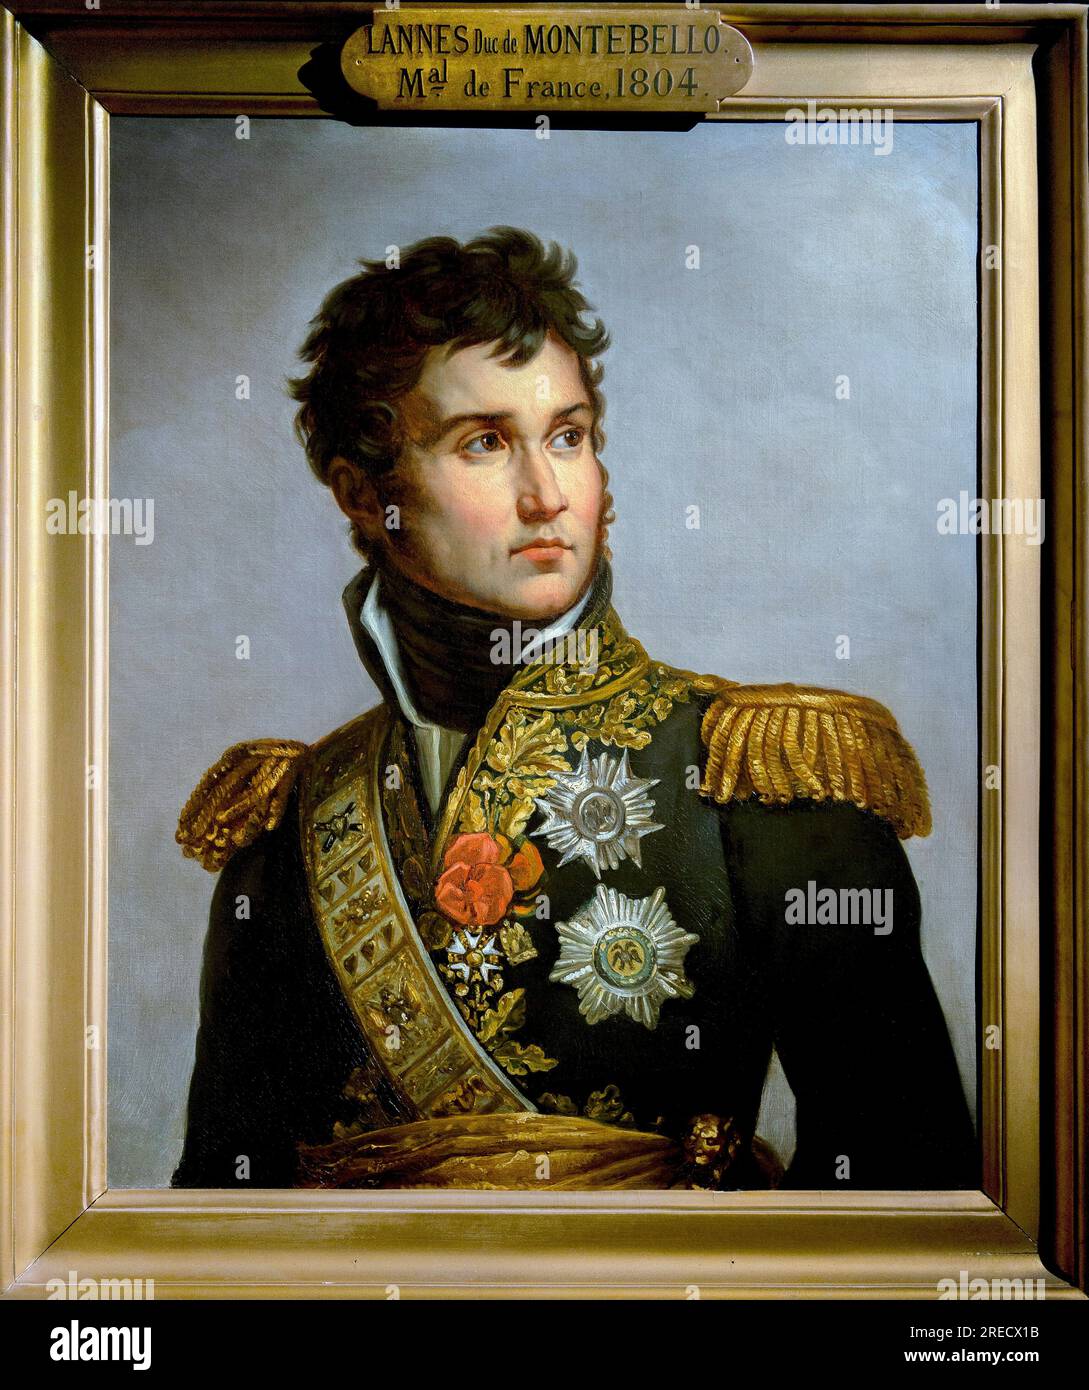 Portrait de Jean Lannes, duc de Montebello (1769-1809) marechal d'Empire Copie de Volpeliere d'apres le Portrait en Bitten de Lannes par Gerard - Paris - Musee de l'Armée Stockfoto